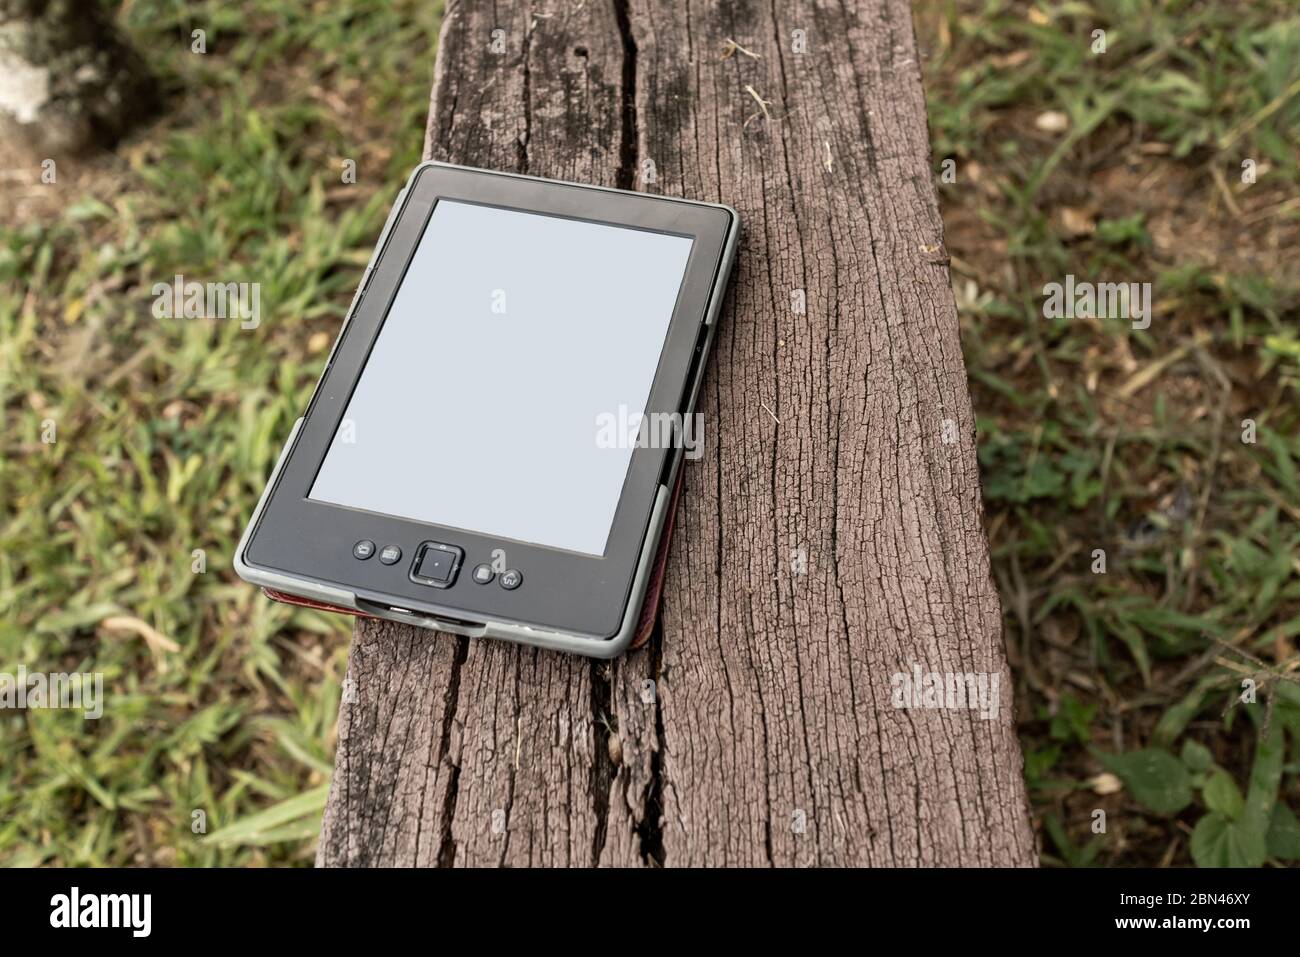 Digitaler Buchleser, E-Book, auf Holzbank im Garten, Areal, Rio de Janeiro, Brasilien Stockfoto